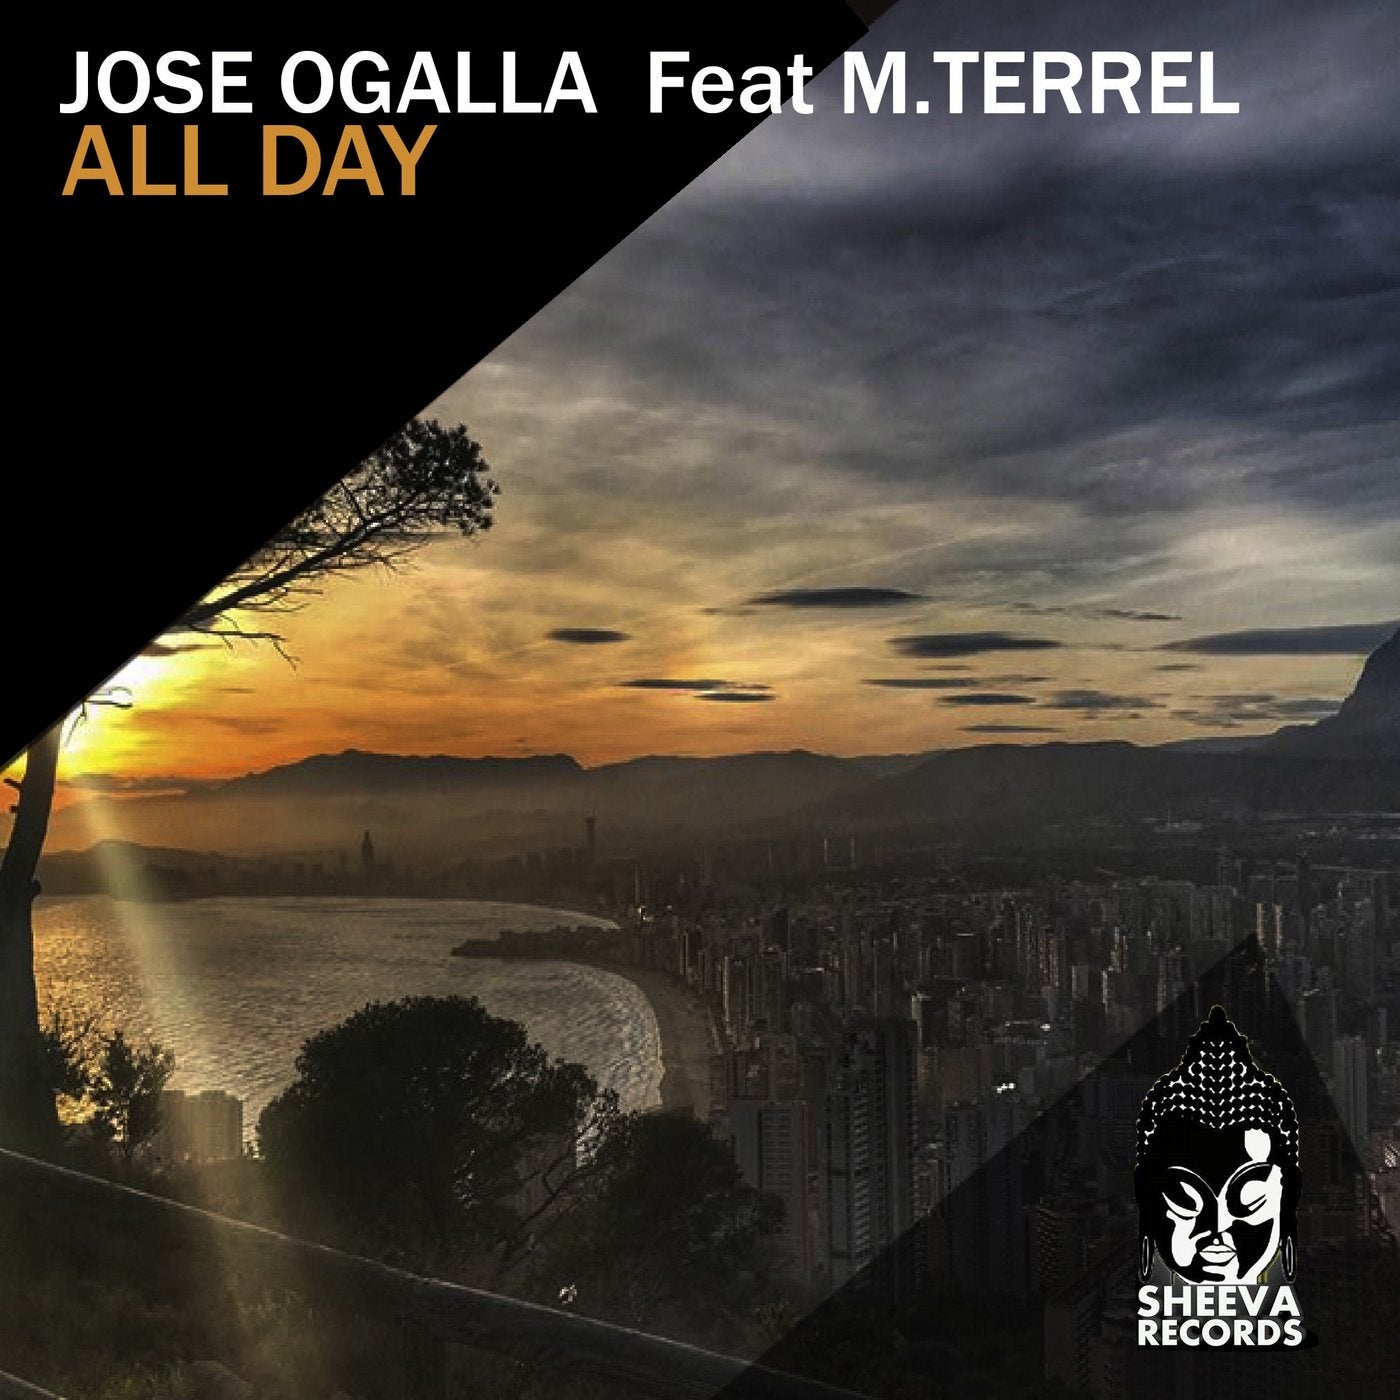 Jose Ogalla Feat M Terrel - All Day (Original Club Mix)